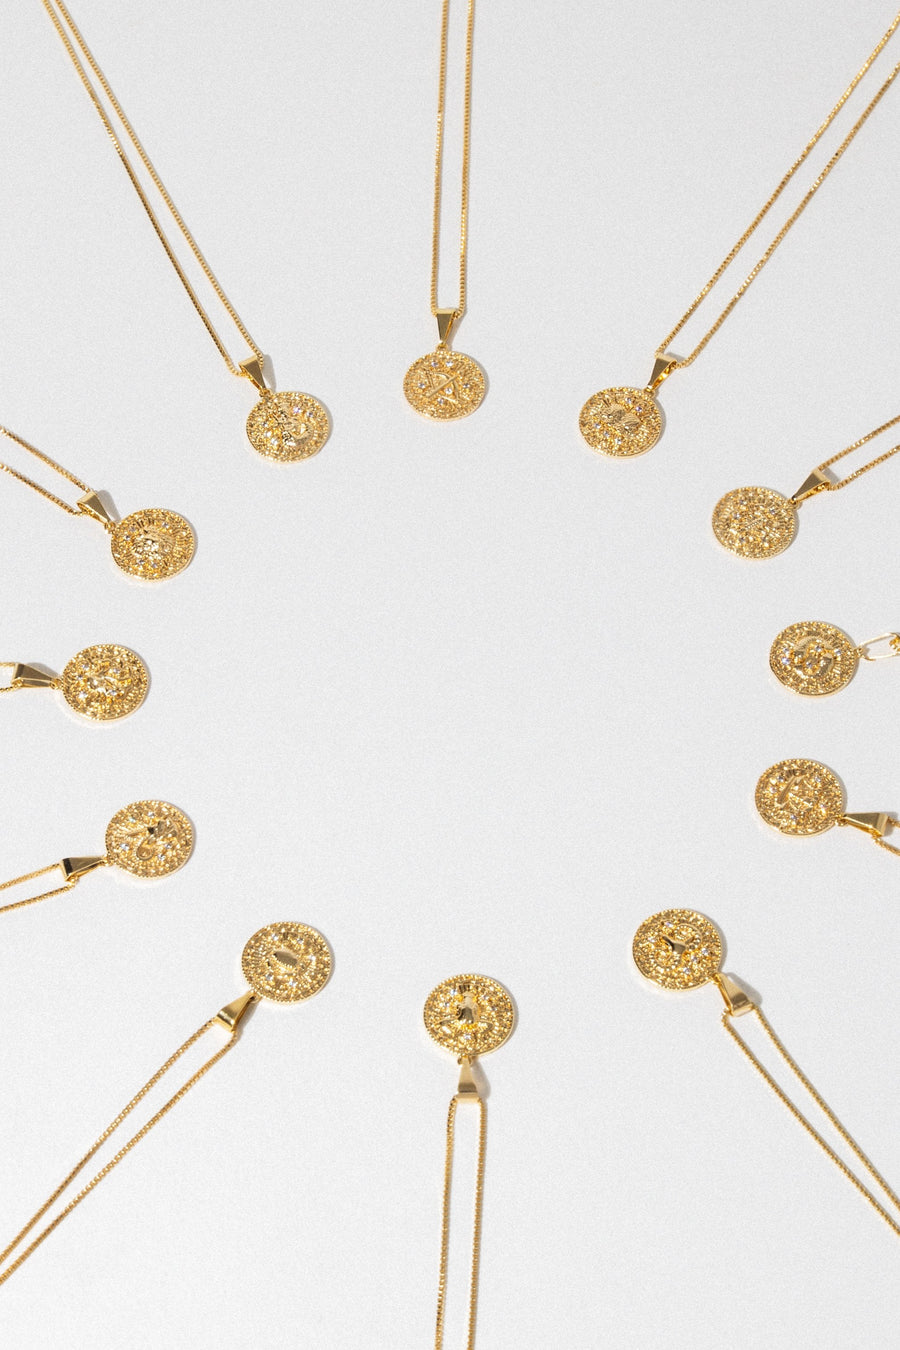 Dona Italia Jewelry Astrology Necklace